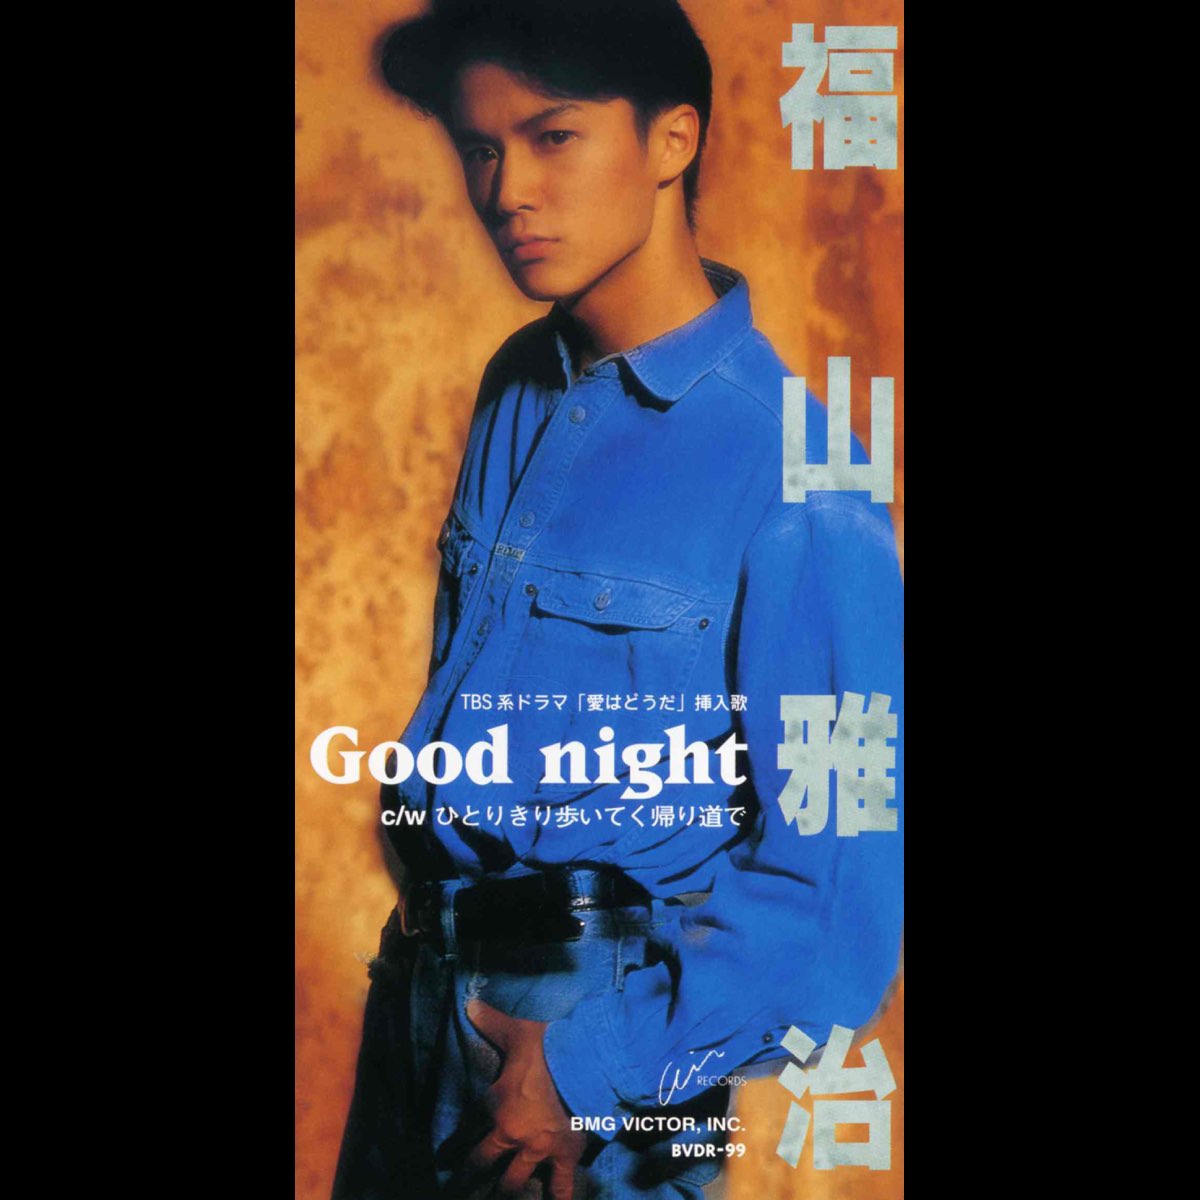 福山 雅治の Good Night Single をapple Musicで